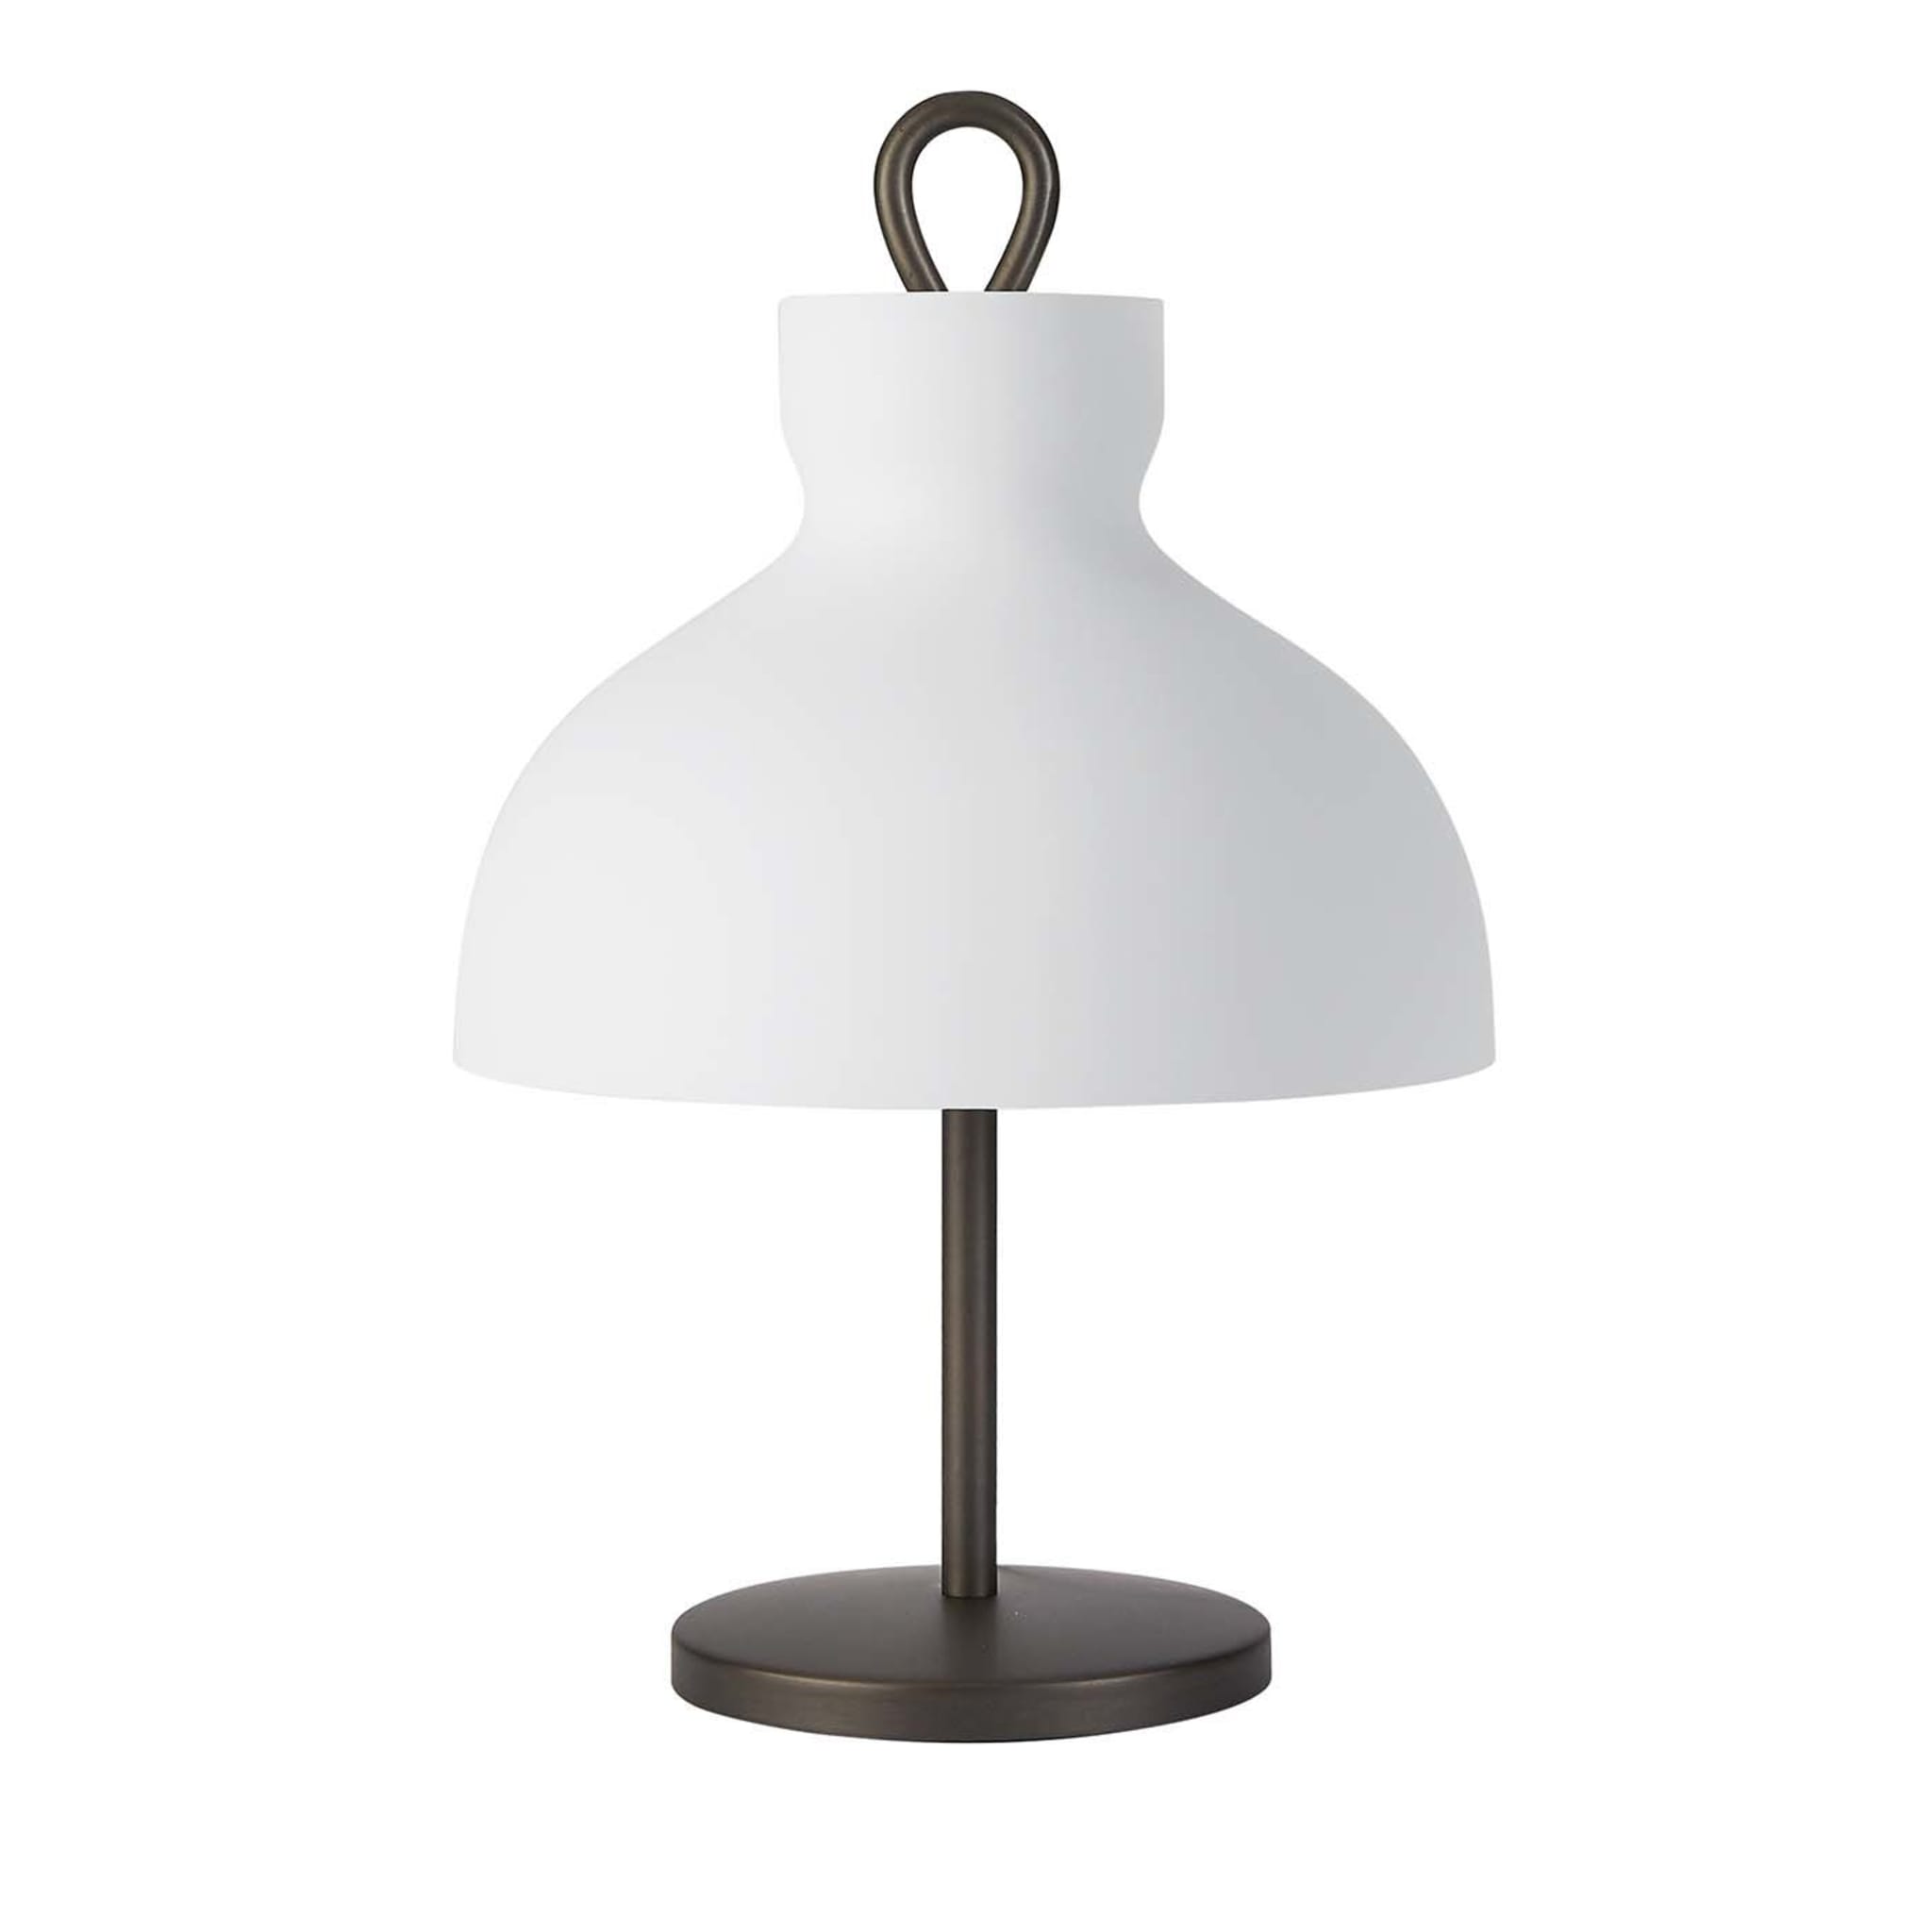 Arenzano Bassa Table Lamp by Ignazio Gardella - Main view